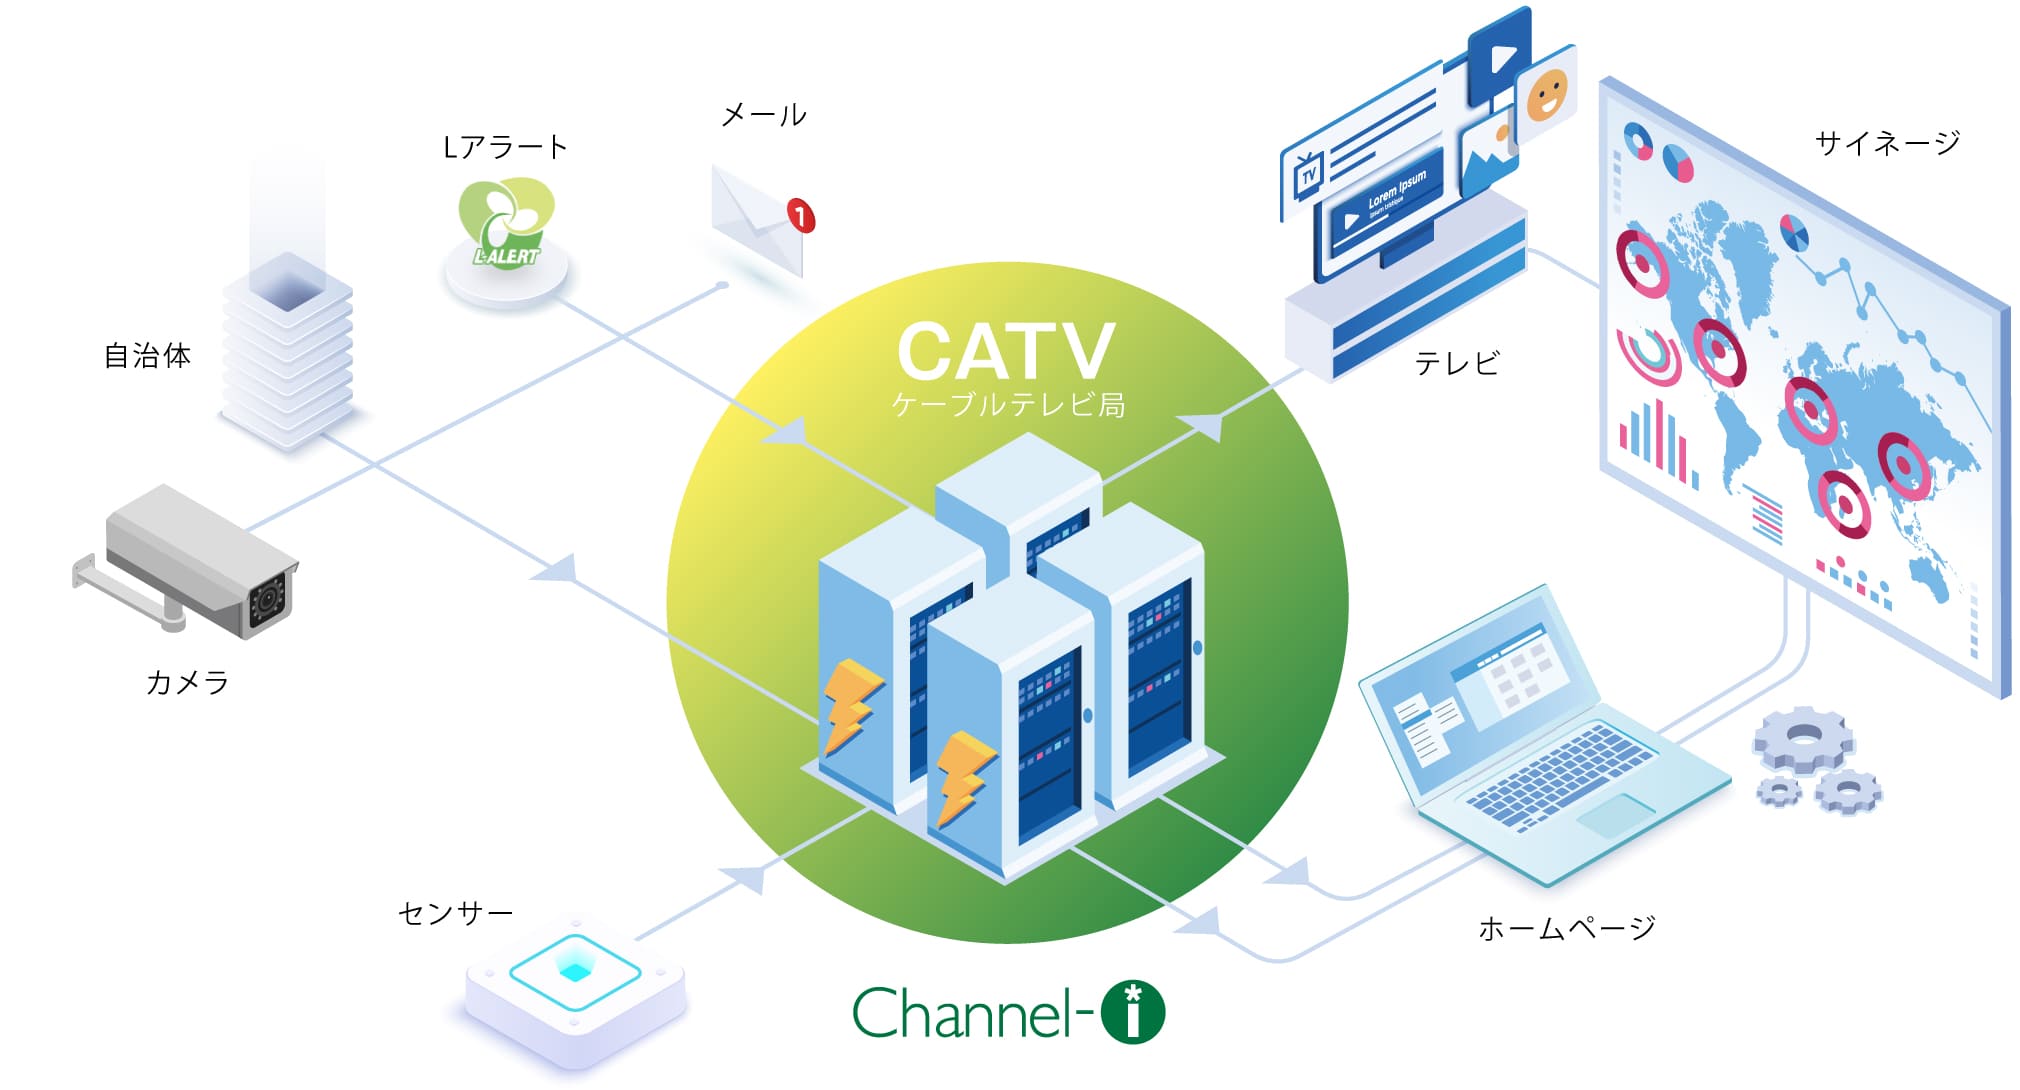 Catv地域情報マネジメントシステム Channel I チャンネルアイ 日本ソフト開発株式会社